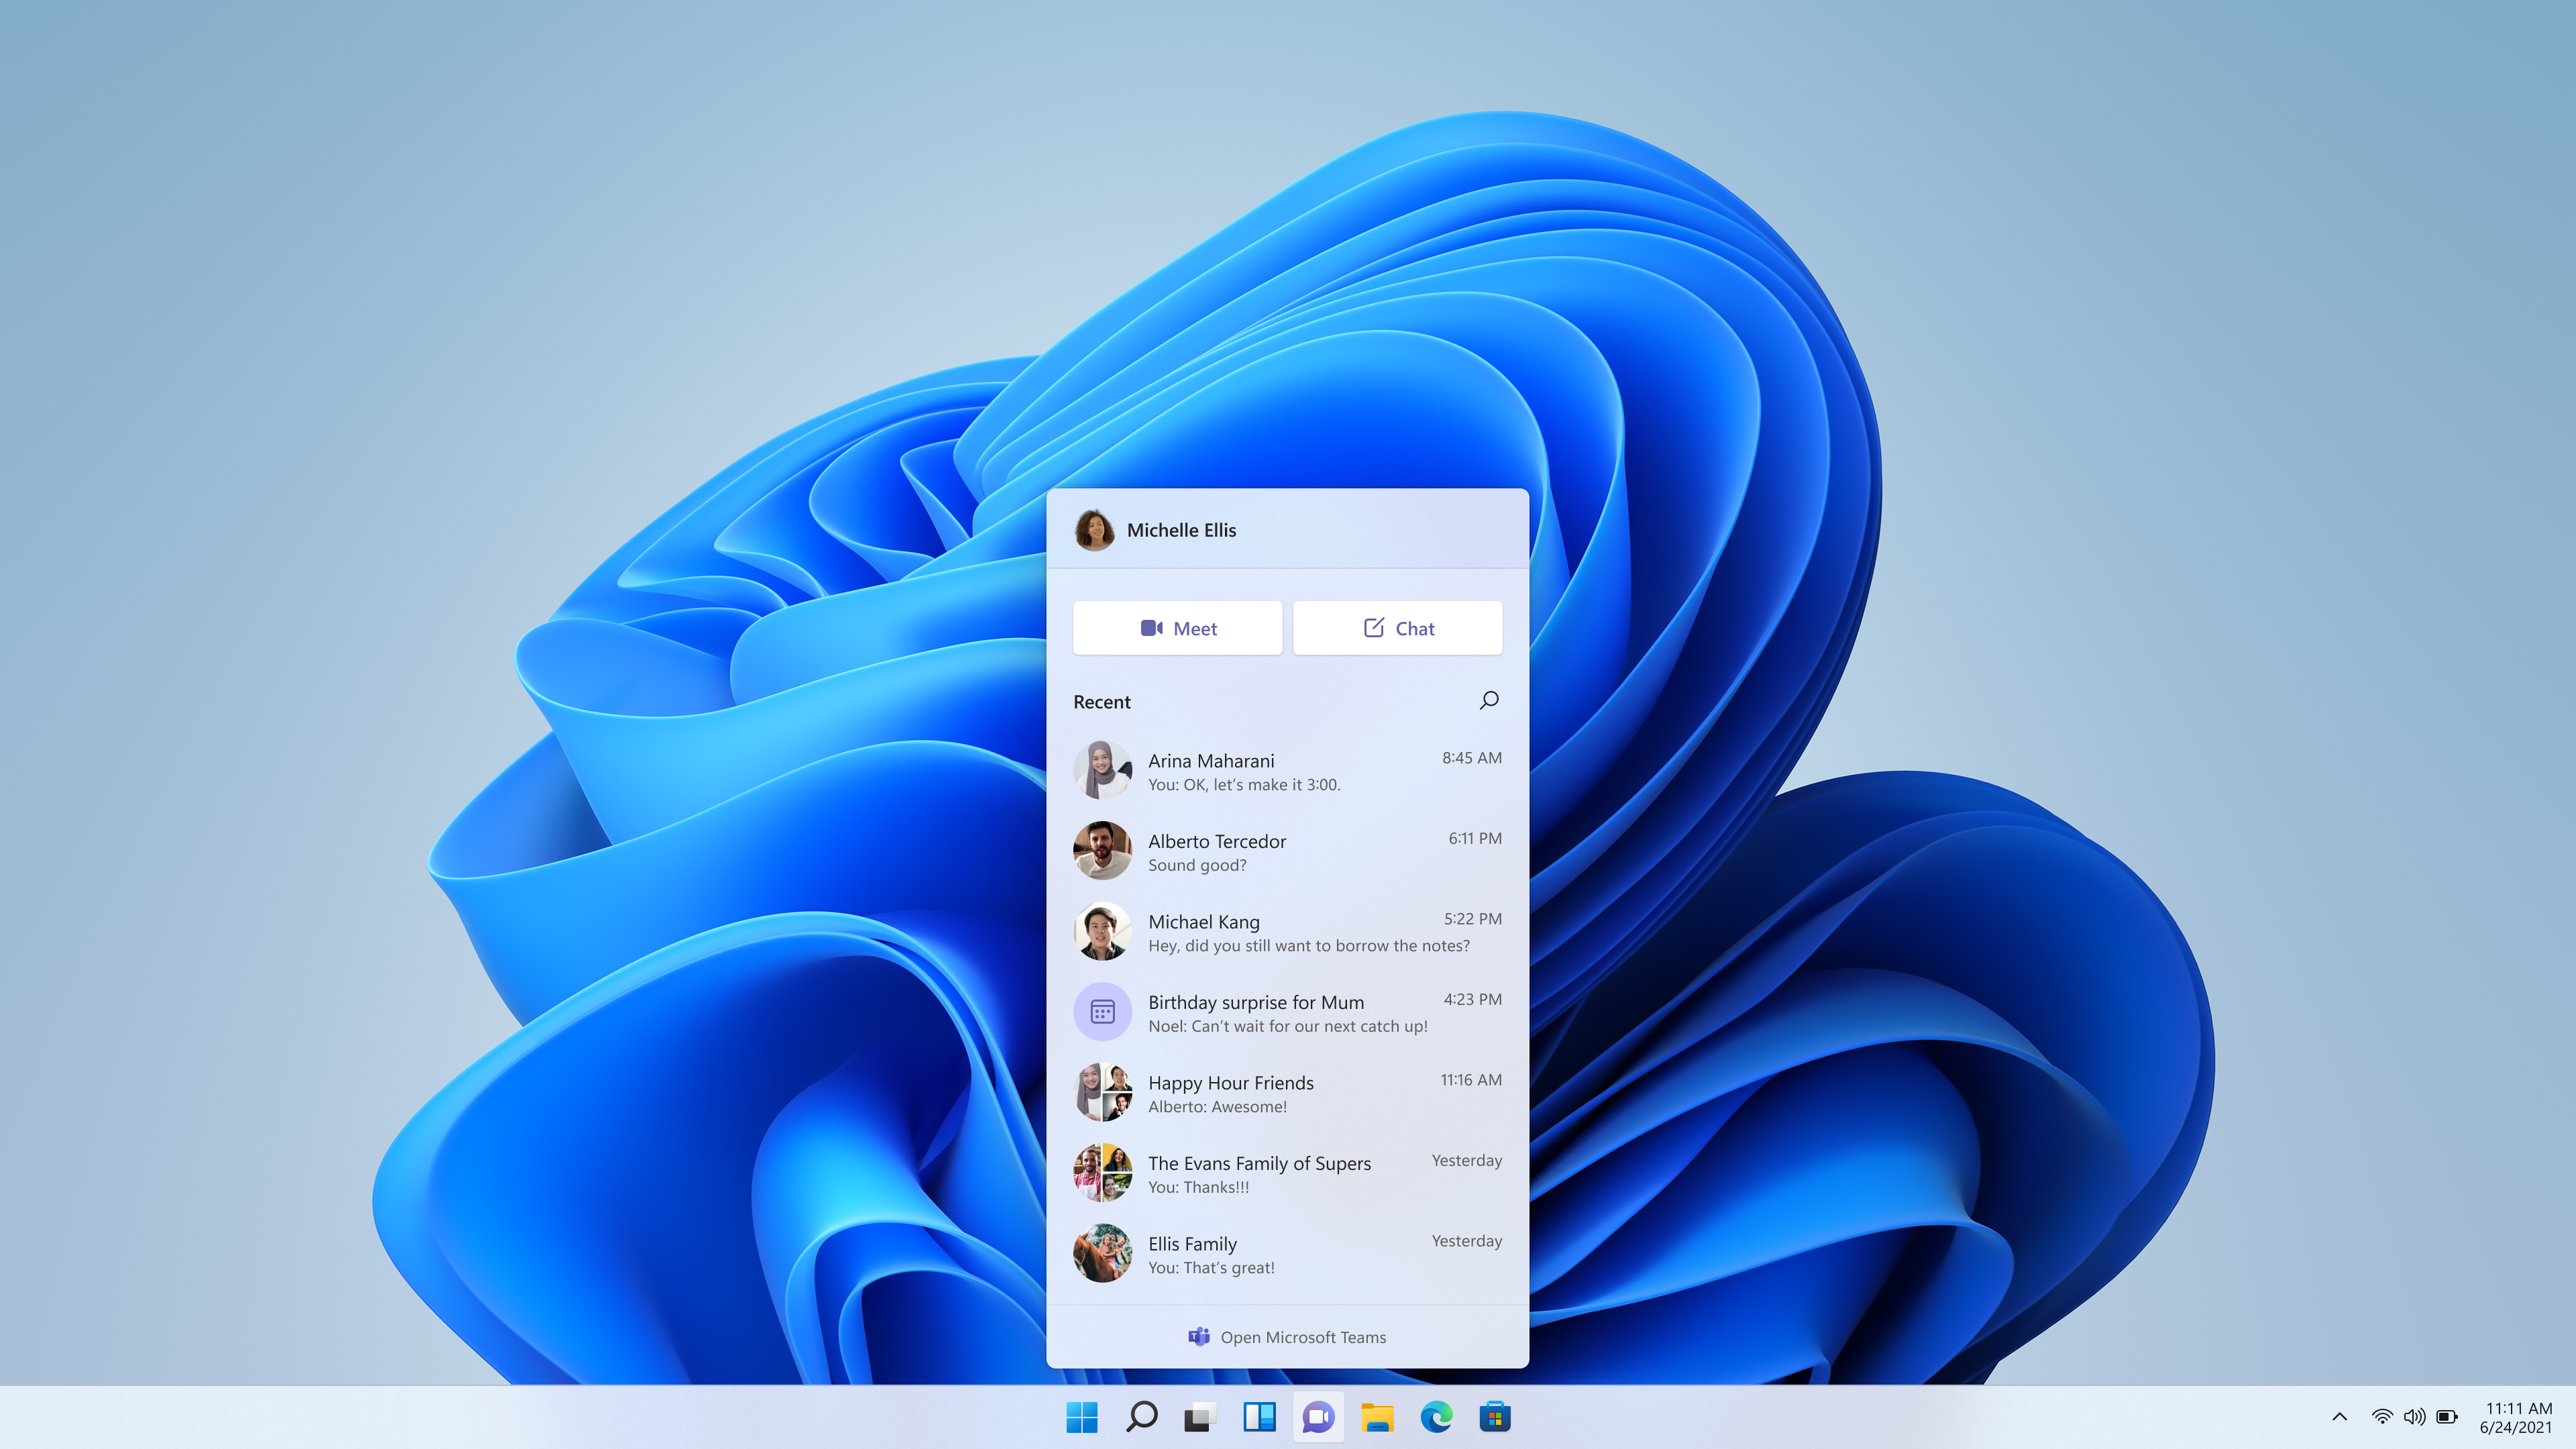 Bạn là người yêu công nghệ? Chat trên Windows 11 sẽ là một trải nghiệm thú vị dành cho bạn. Với giao diện đơn giản, tối giản và đầy tính năng, bạn có thể tương tác với bạn bè, đồng nghiệp và người thân một cách thoải mái và tiện lợi. Hãy cùng tham gia chat với những người trẻ trung, năng động và đầy cảm hứng trên Windows 11 ngay hôm nay!